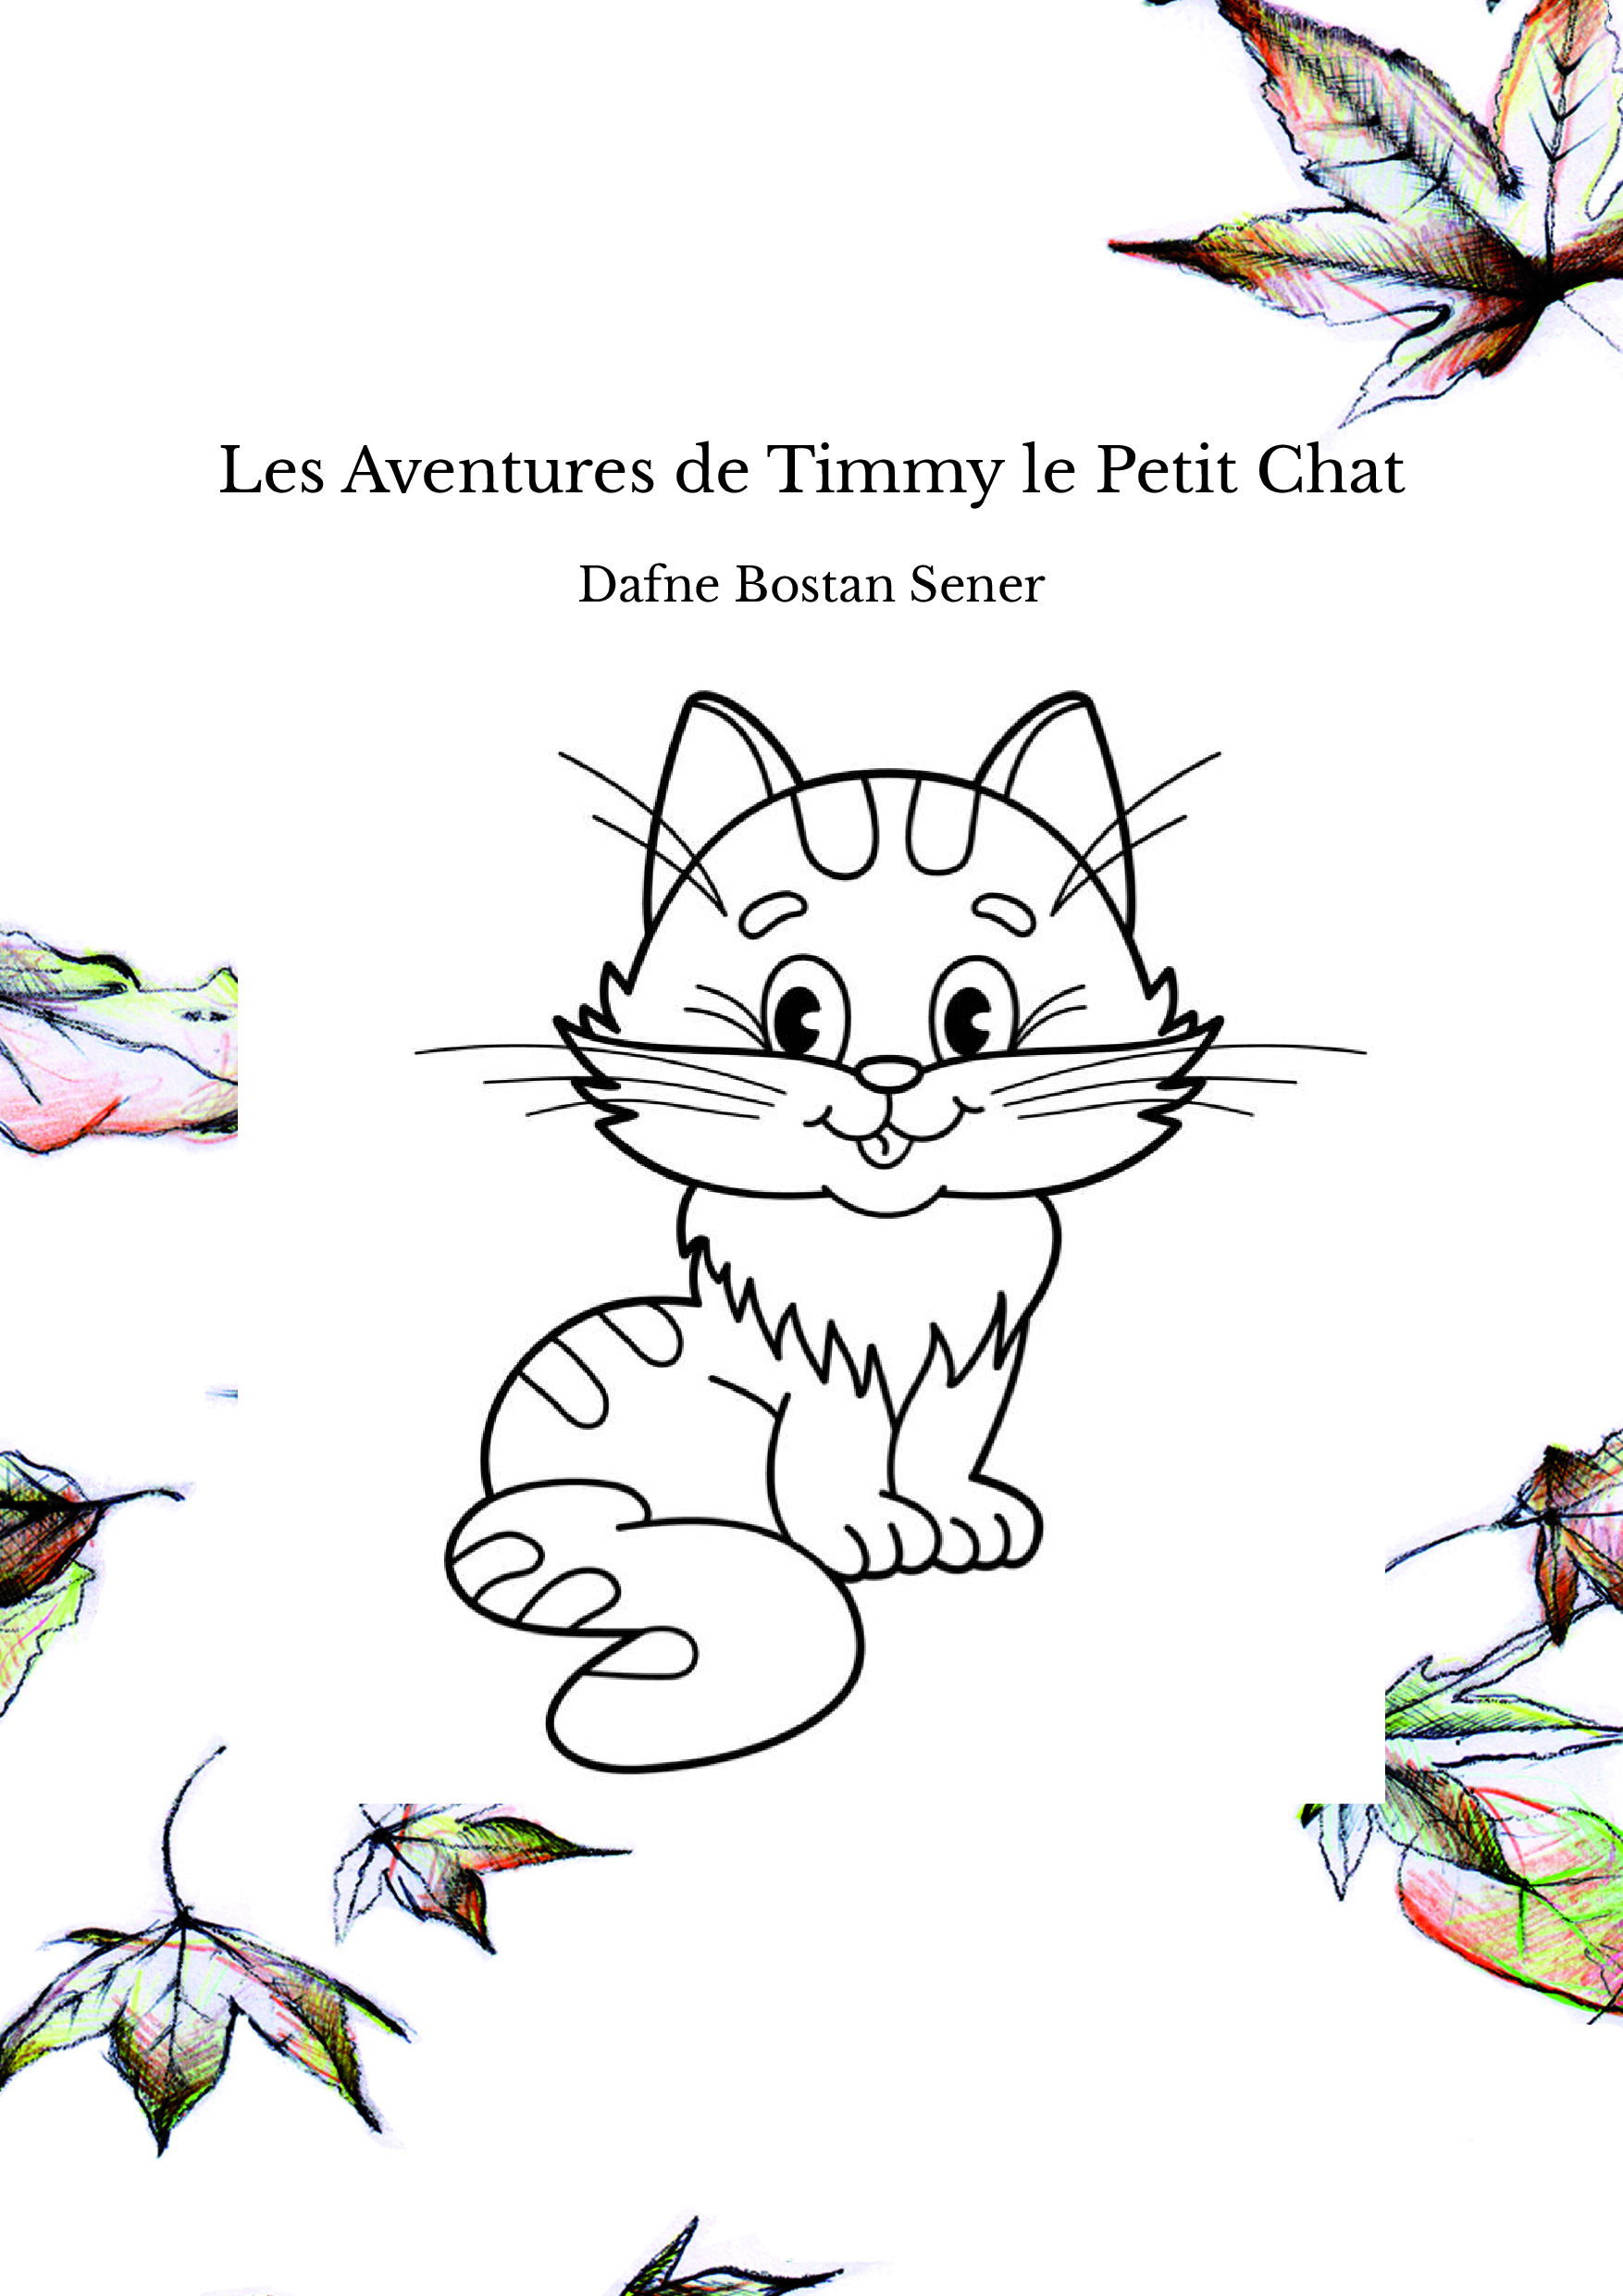 Les Aventures de Timmy le Petit Chat